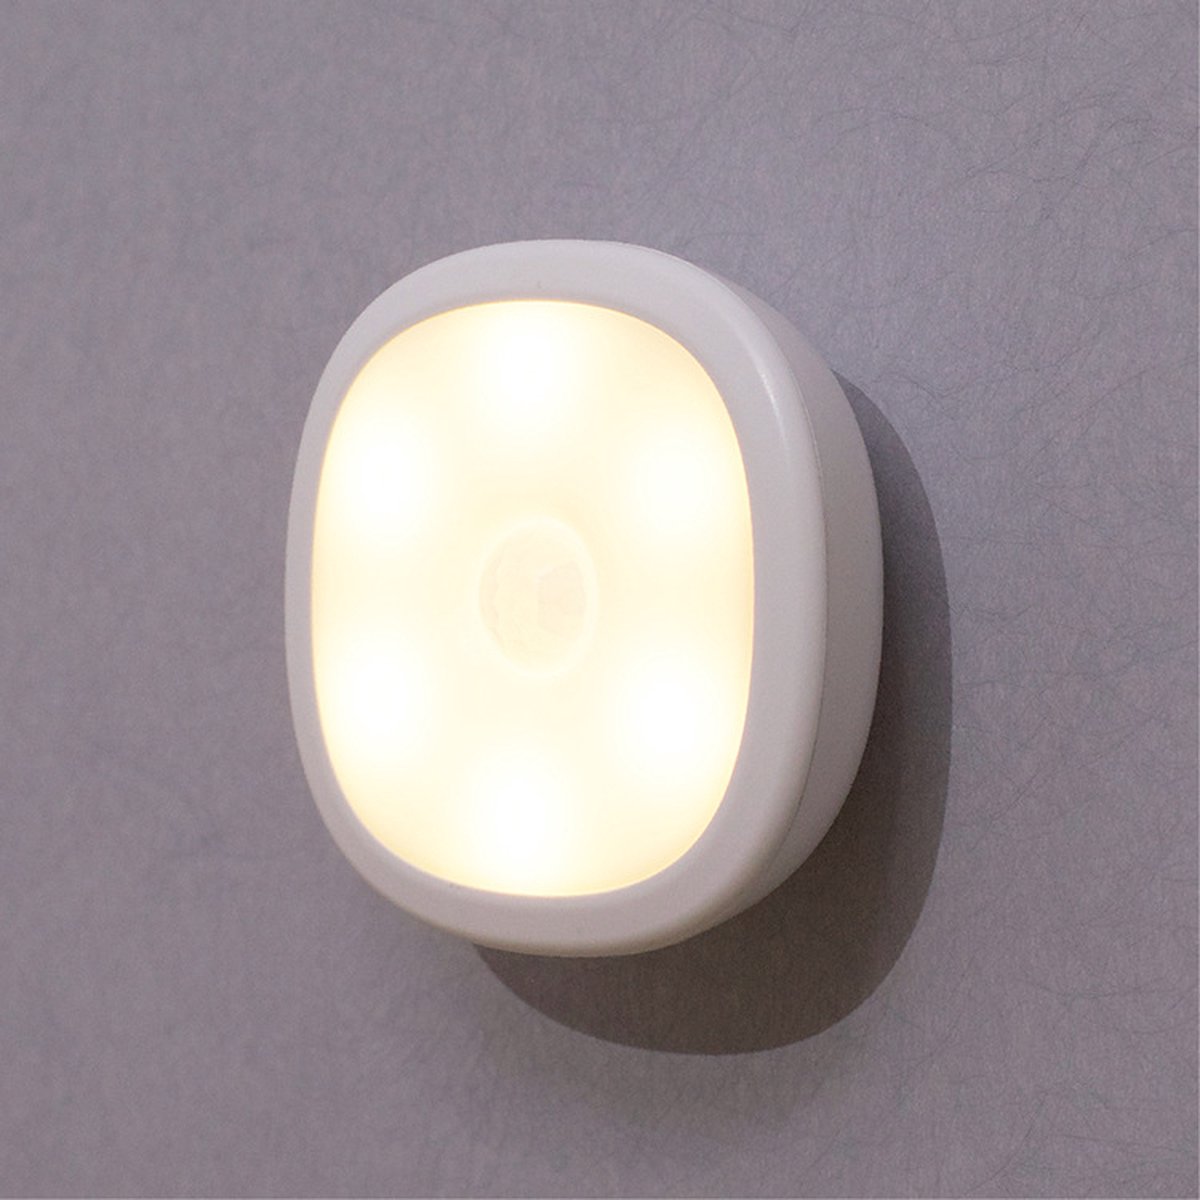 Lueas® Draadloze Ledlamp/wandlamp - LED Nachtlamp USB Oplaadbaar – Warm Wit licht – Overal Plaatsbaar